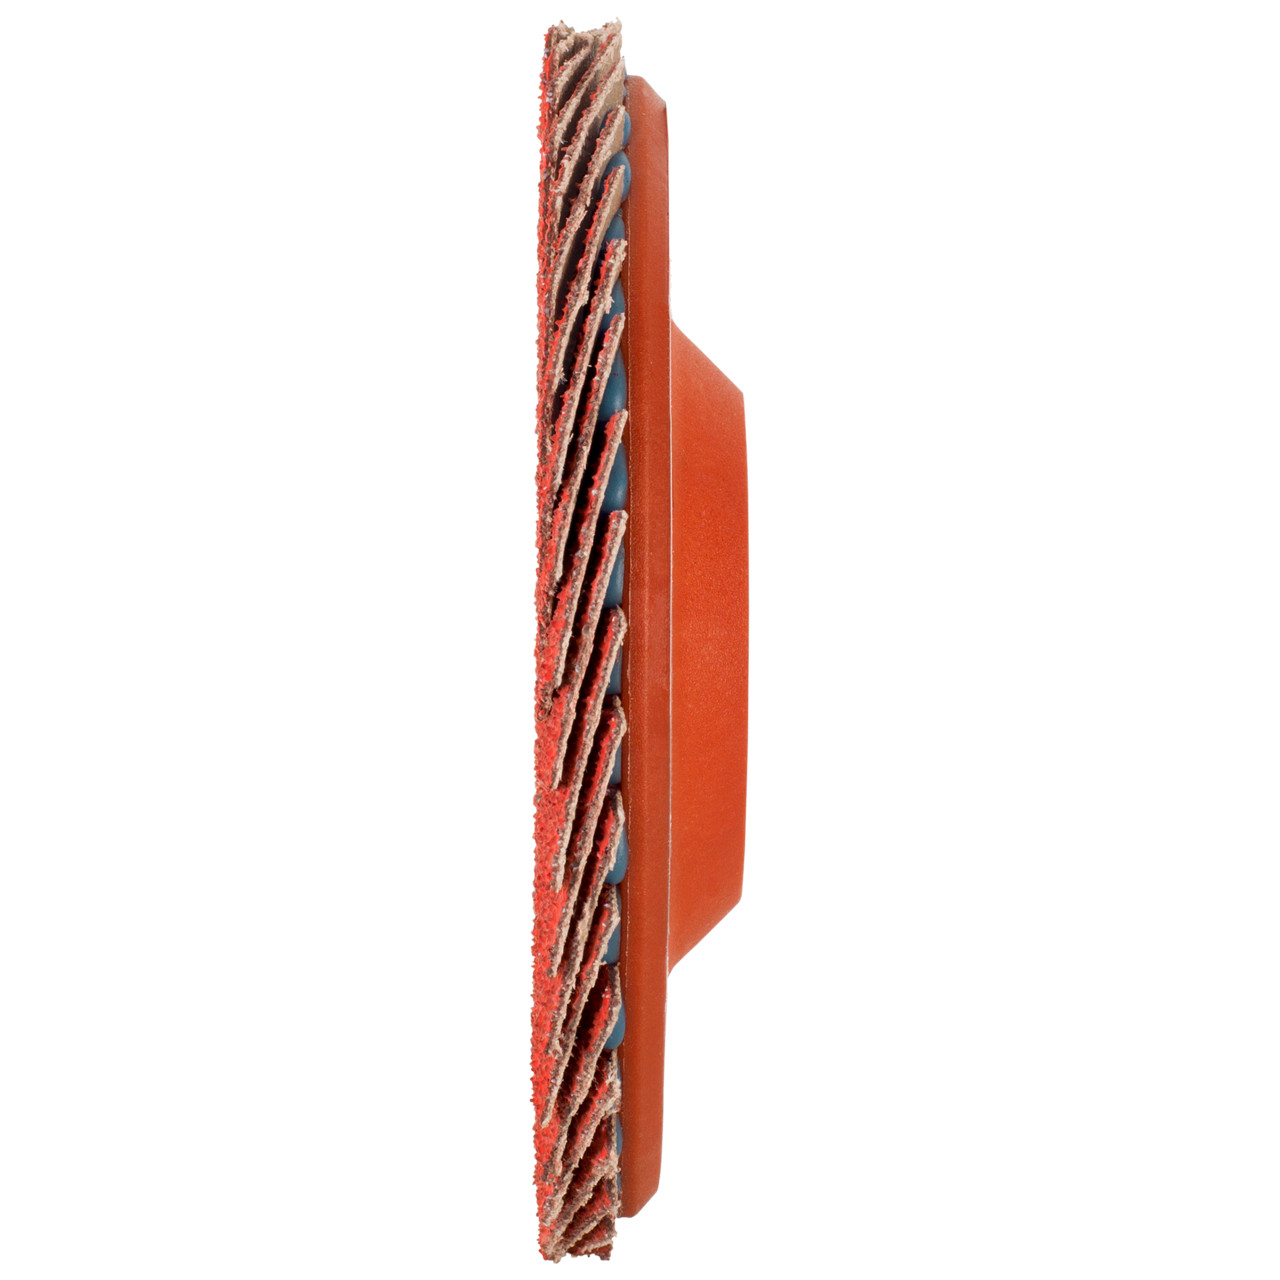 Tyrolit Rondelle éventail DxH 125x22,23 CERAMIC pour acier inoxydable, P80, forme : 28N - modèle droit (corps de support en plastique), art. 34166865